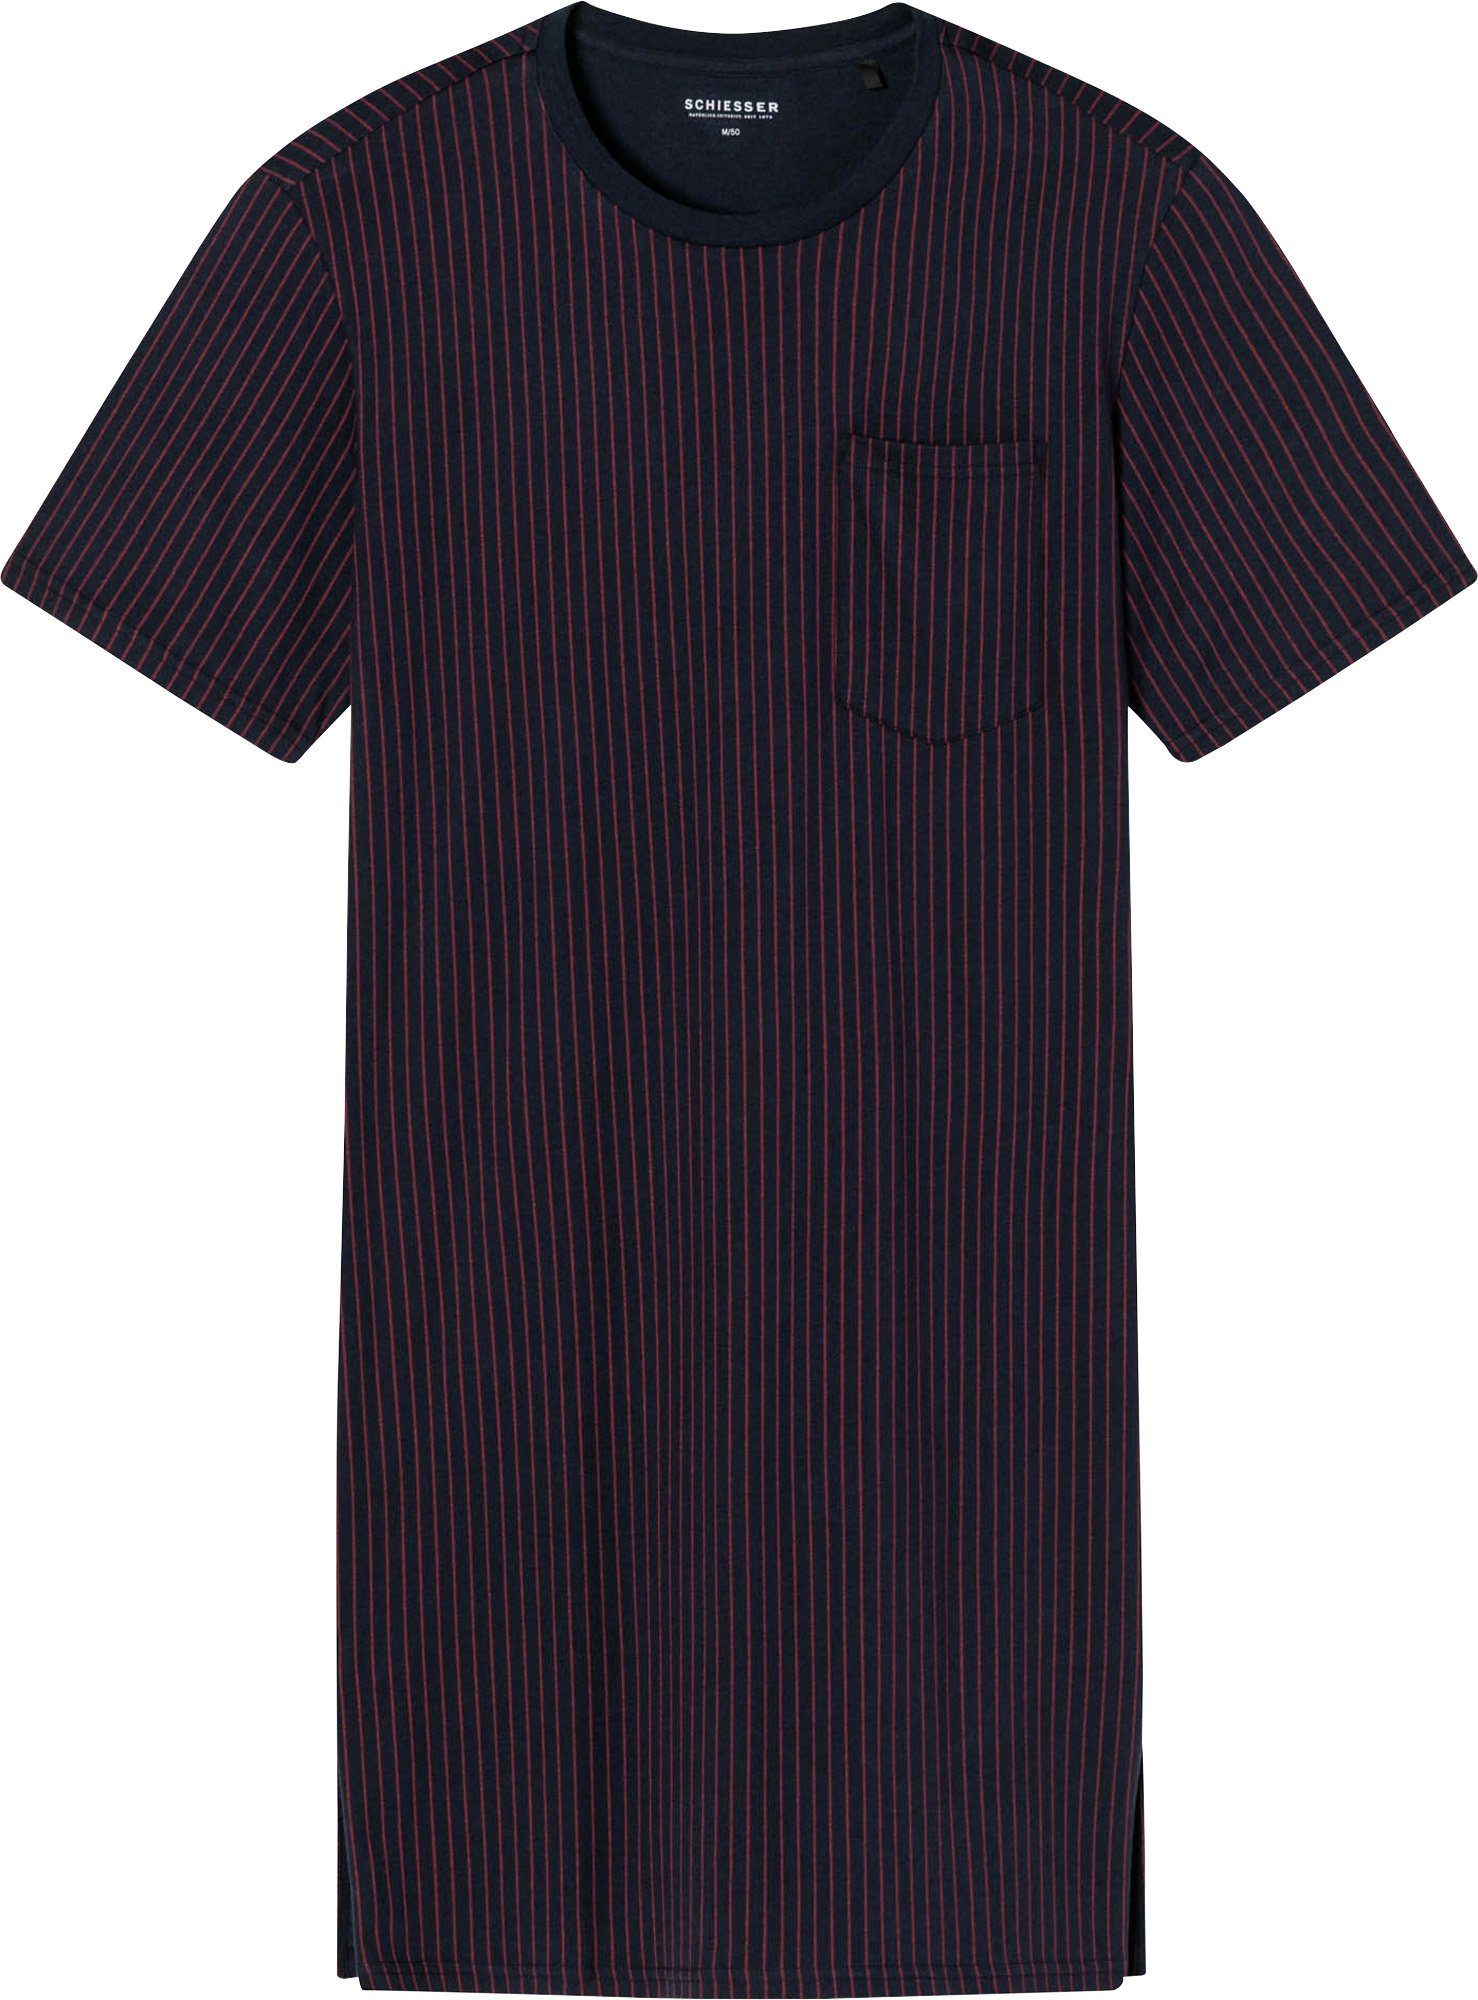 Nachthemd Schiesser Single-Jersey Herren-Nachthemd Streifen